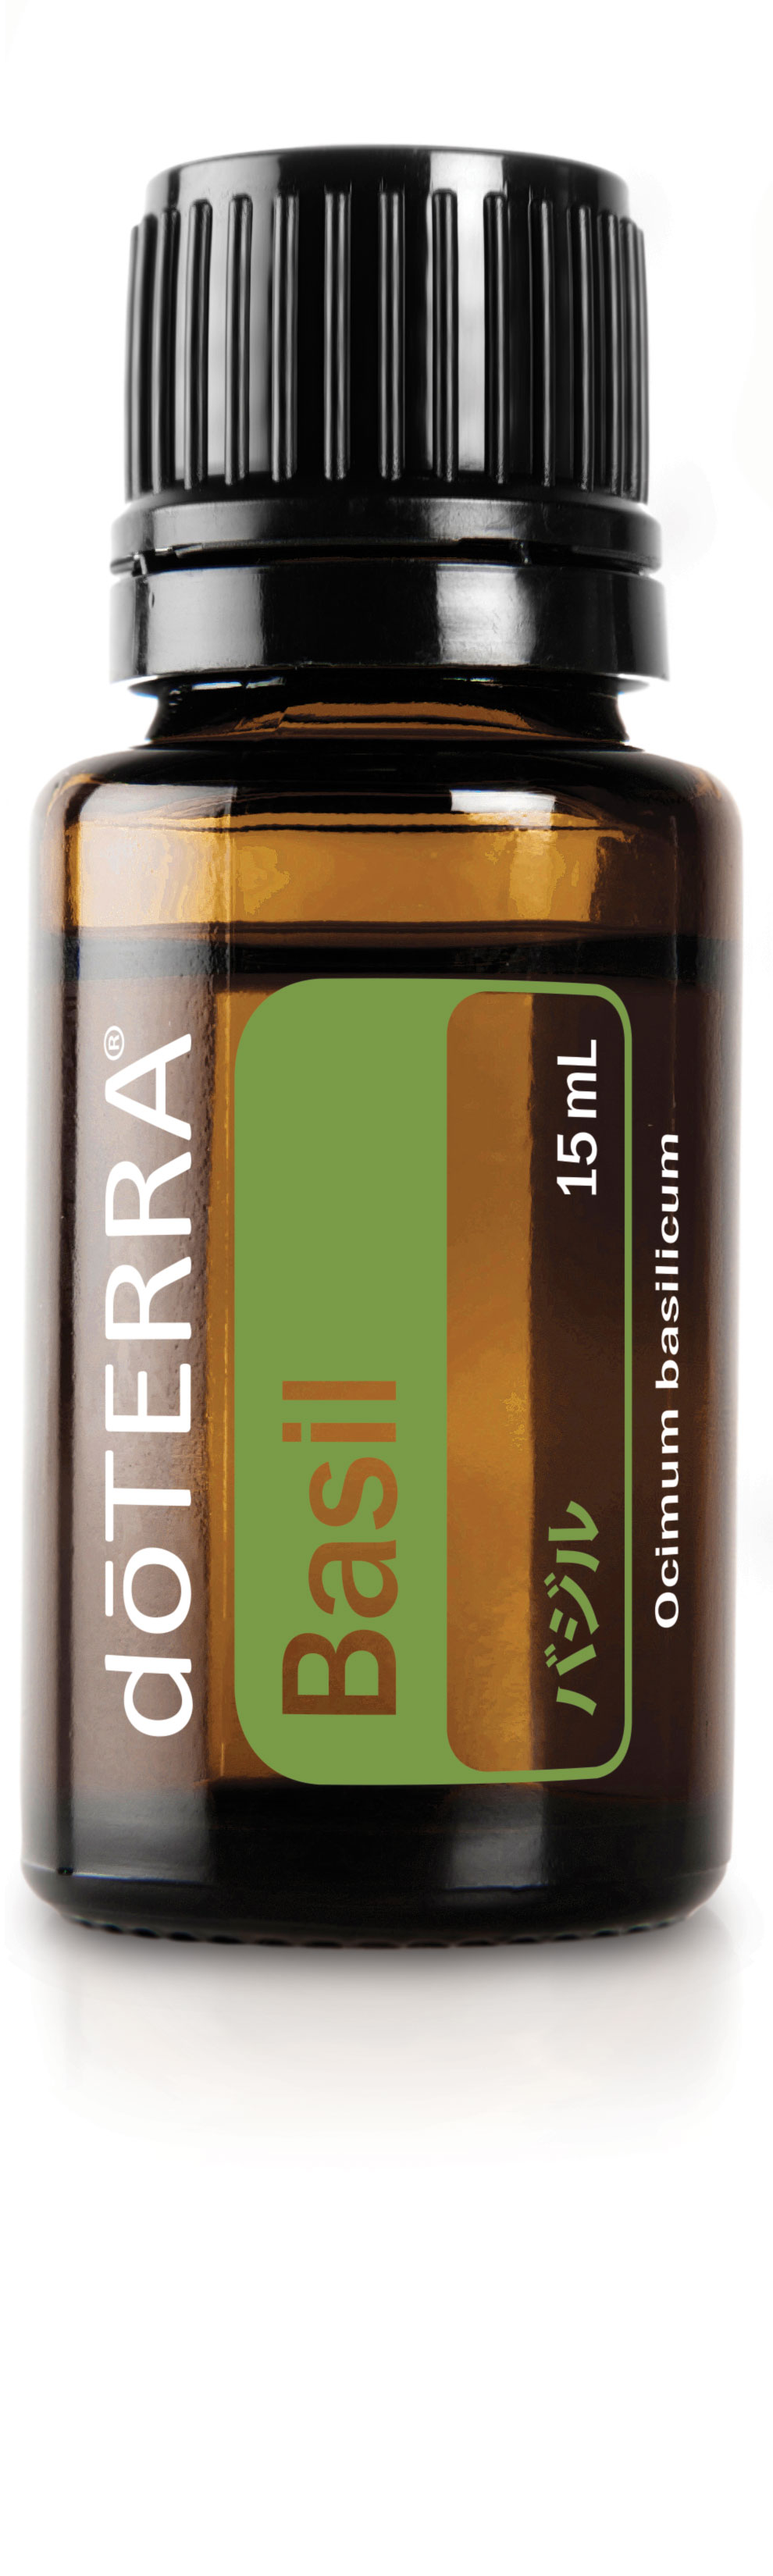 バジル Doterra エッセンシャルオイル Doterra Essential Oils